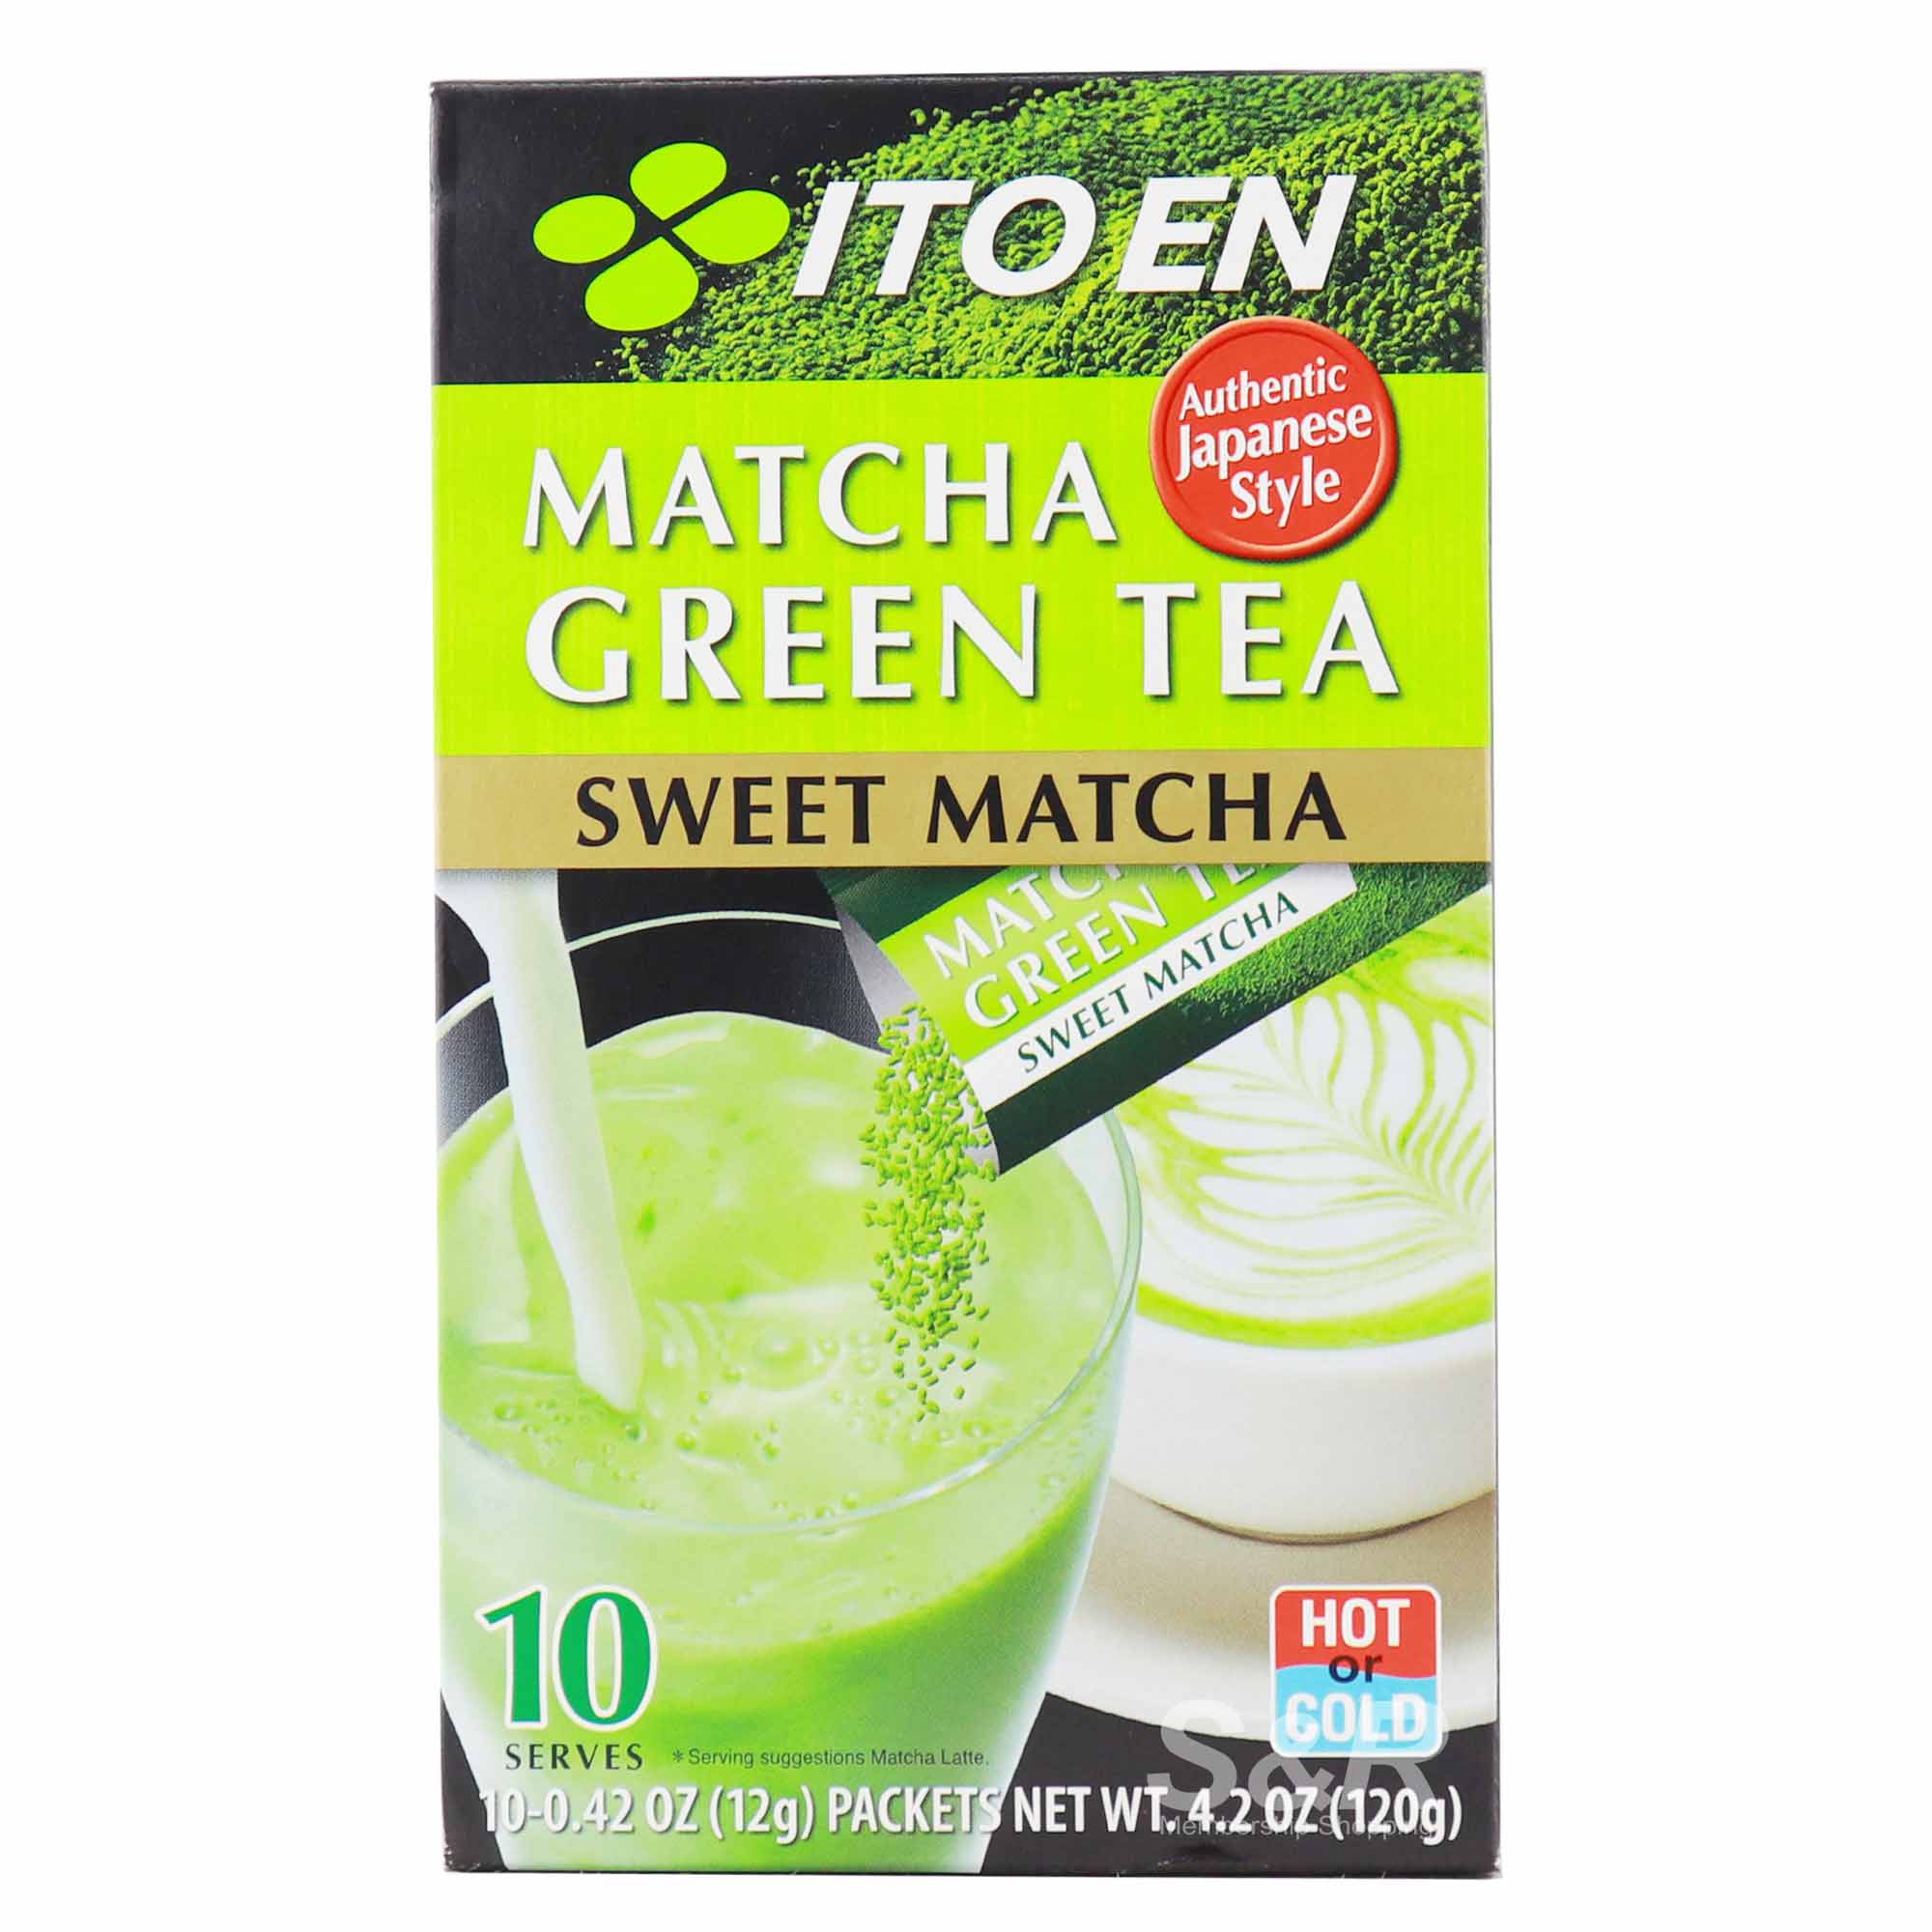 Ito En Matcha Green Tea Sweet Matcha 10 packets